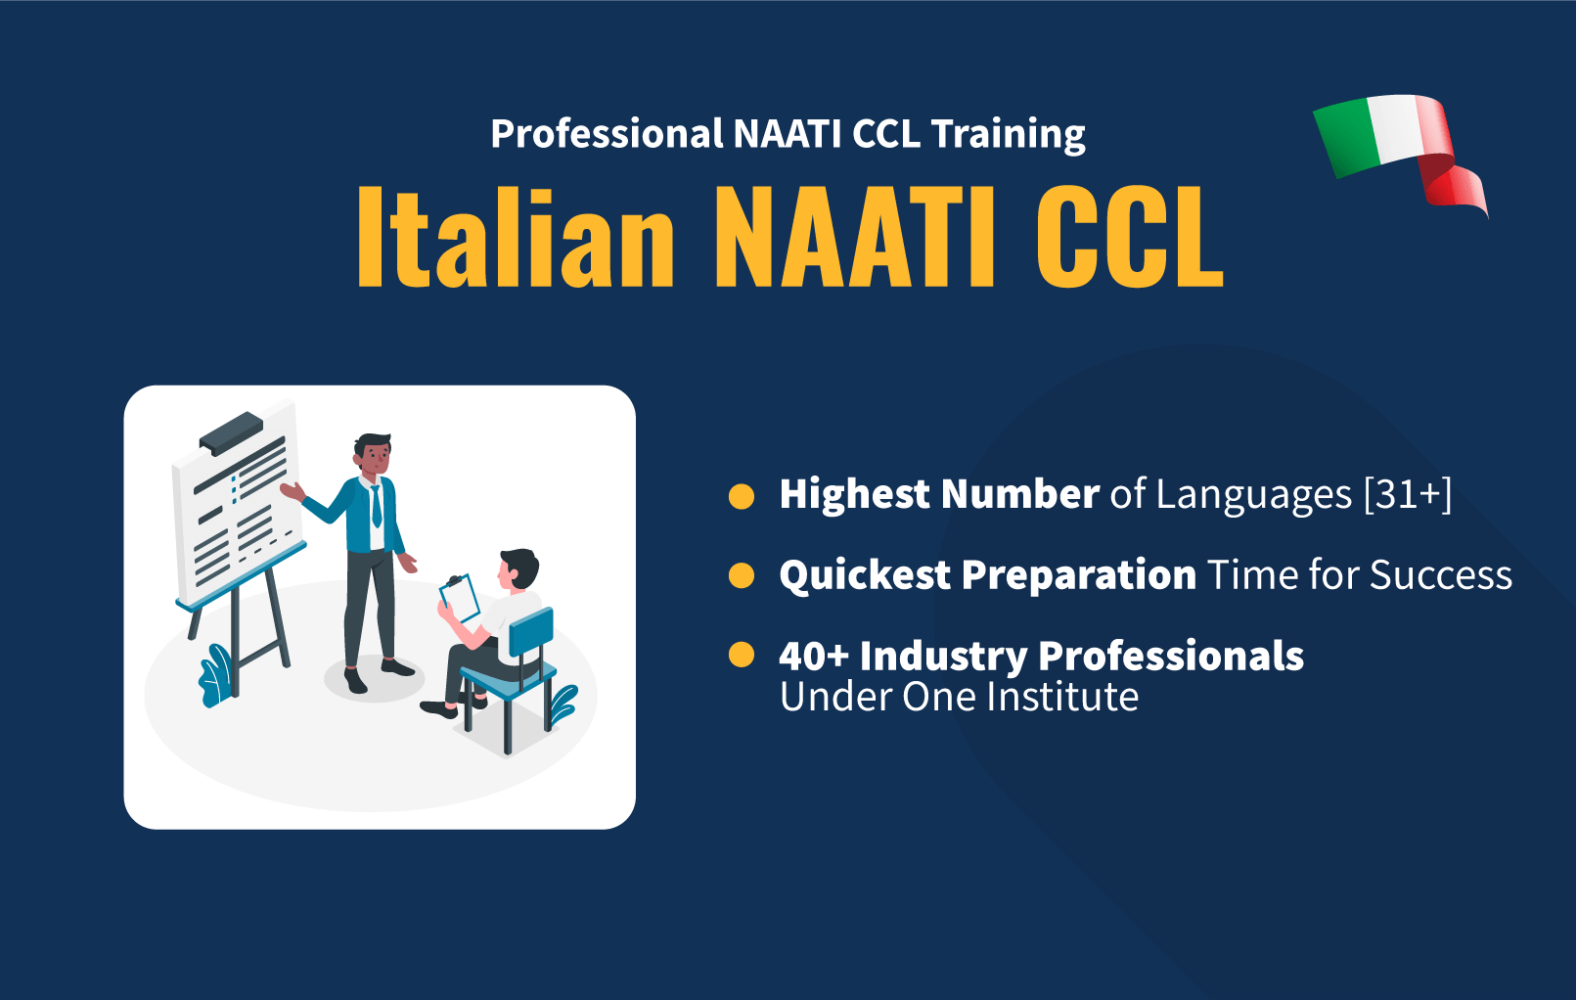 Italian NAATI CCL